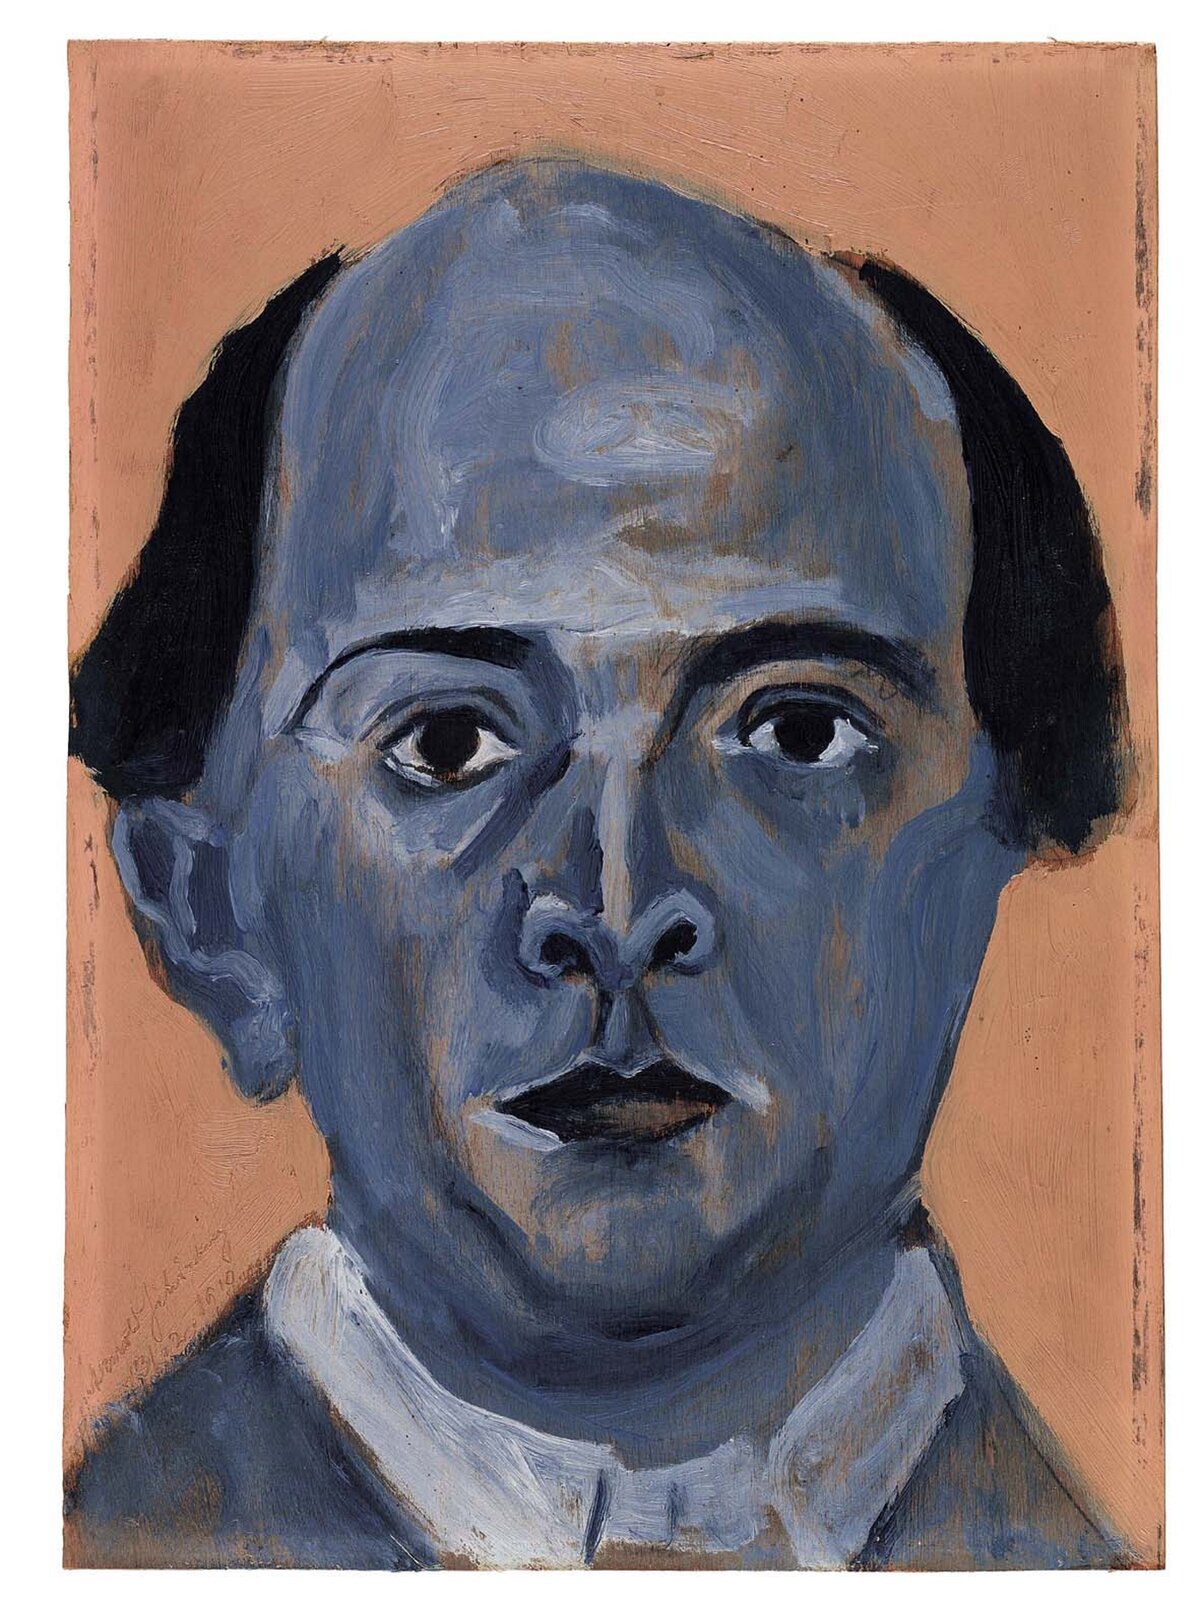 Ilustracja przedstawia autoportret Schönberga. Jest to postać namalowana w tonacjach niebiesko-beżowych z elementami czerni. Tło w odcieniu beżowym. Malarz podkreślił łysinę mężczyzny i duże uszy.